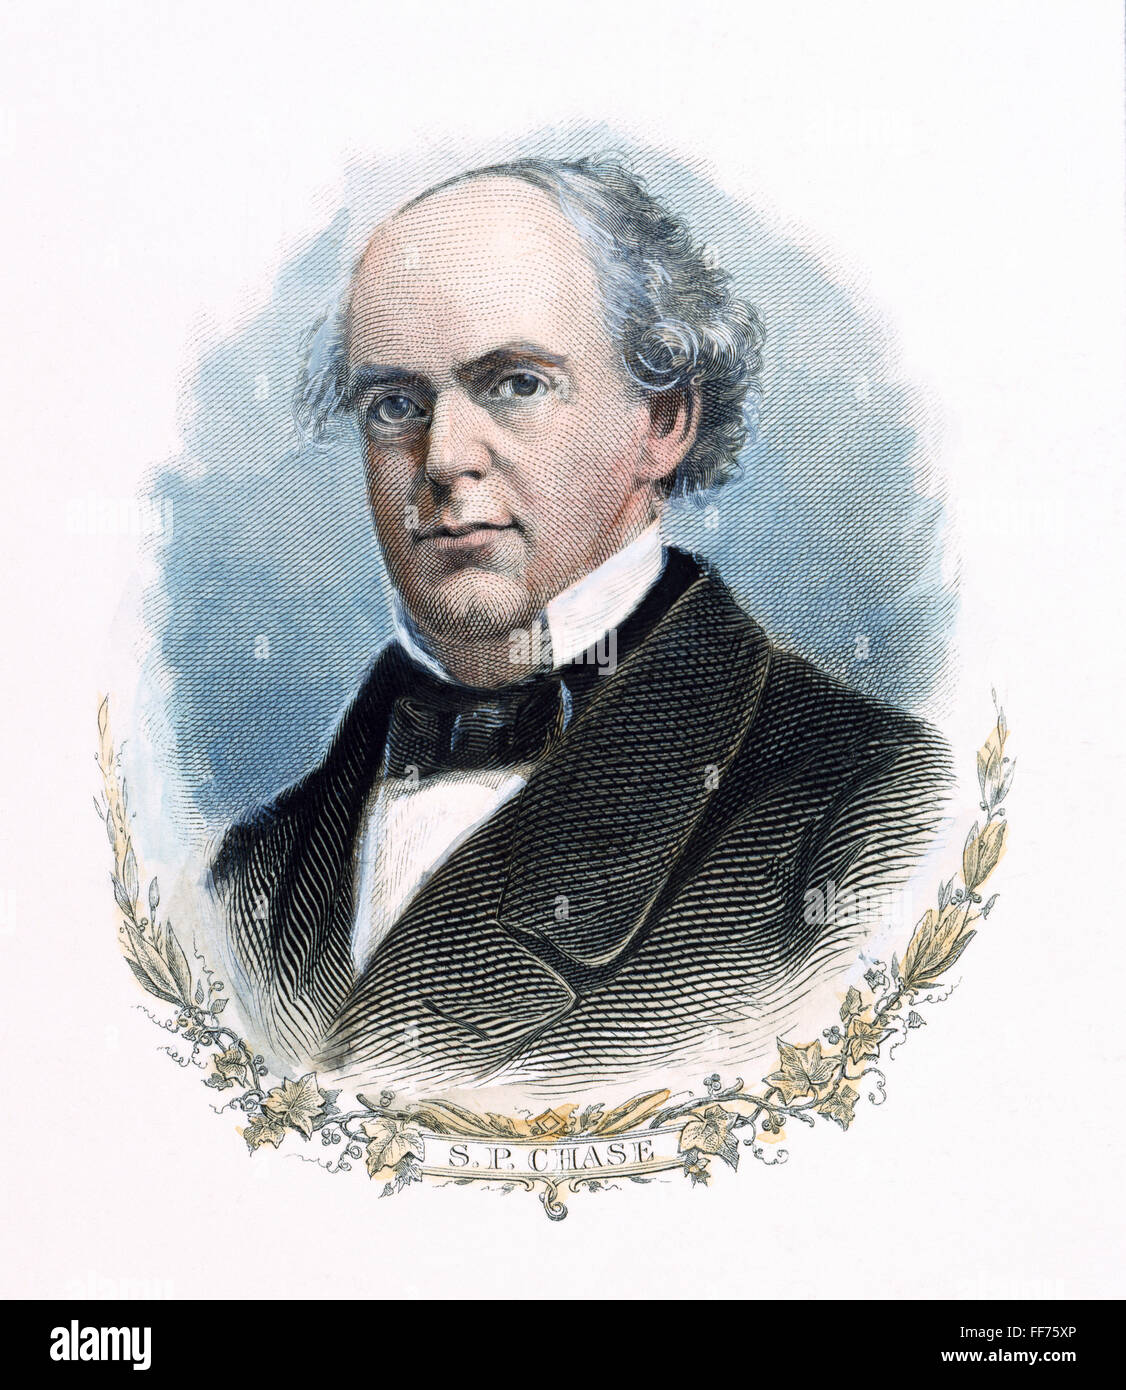 SALMON P CHASE (1808-1873). Homme politique et juriste/nAmerican. Gravure contemporaine américaine. Banque D'Images